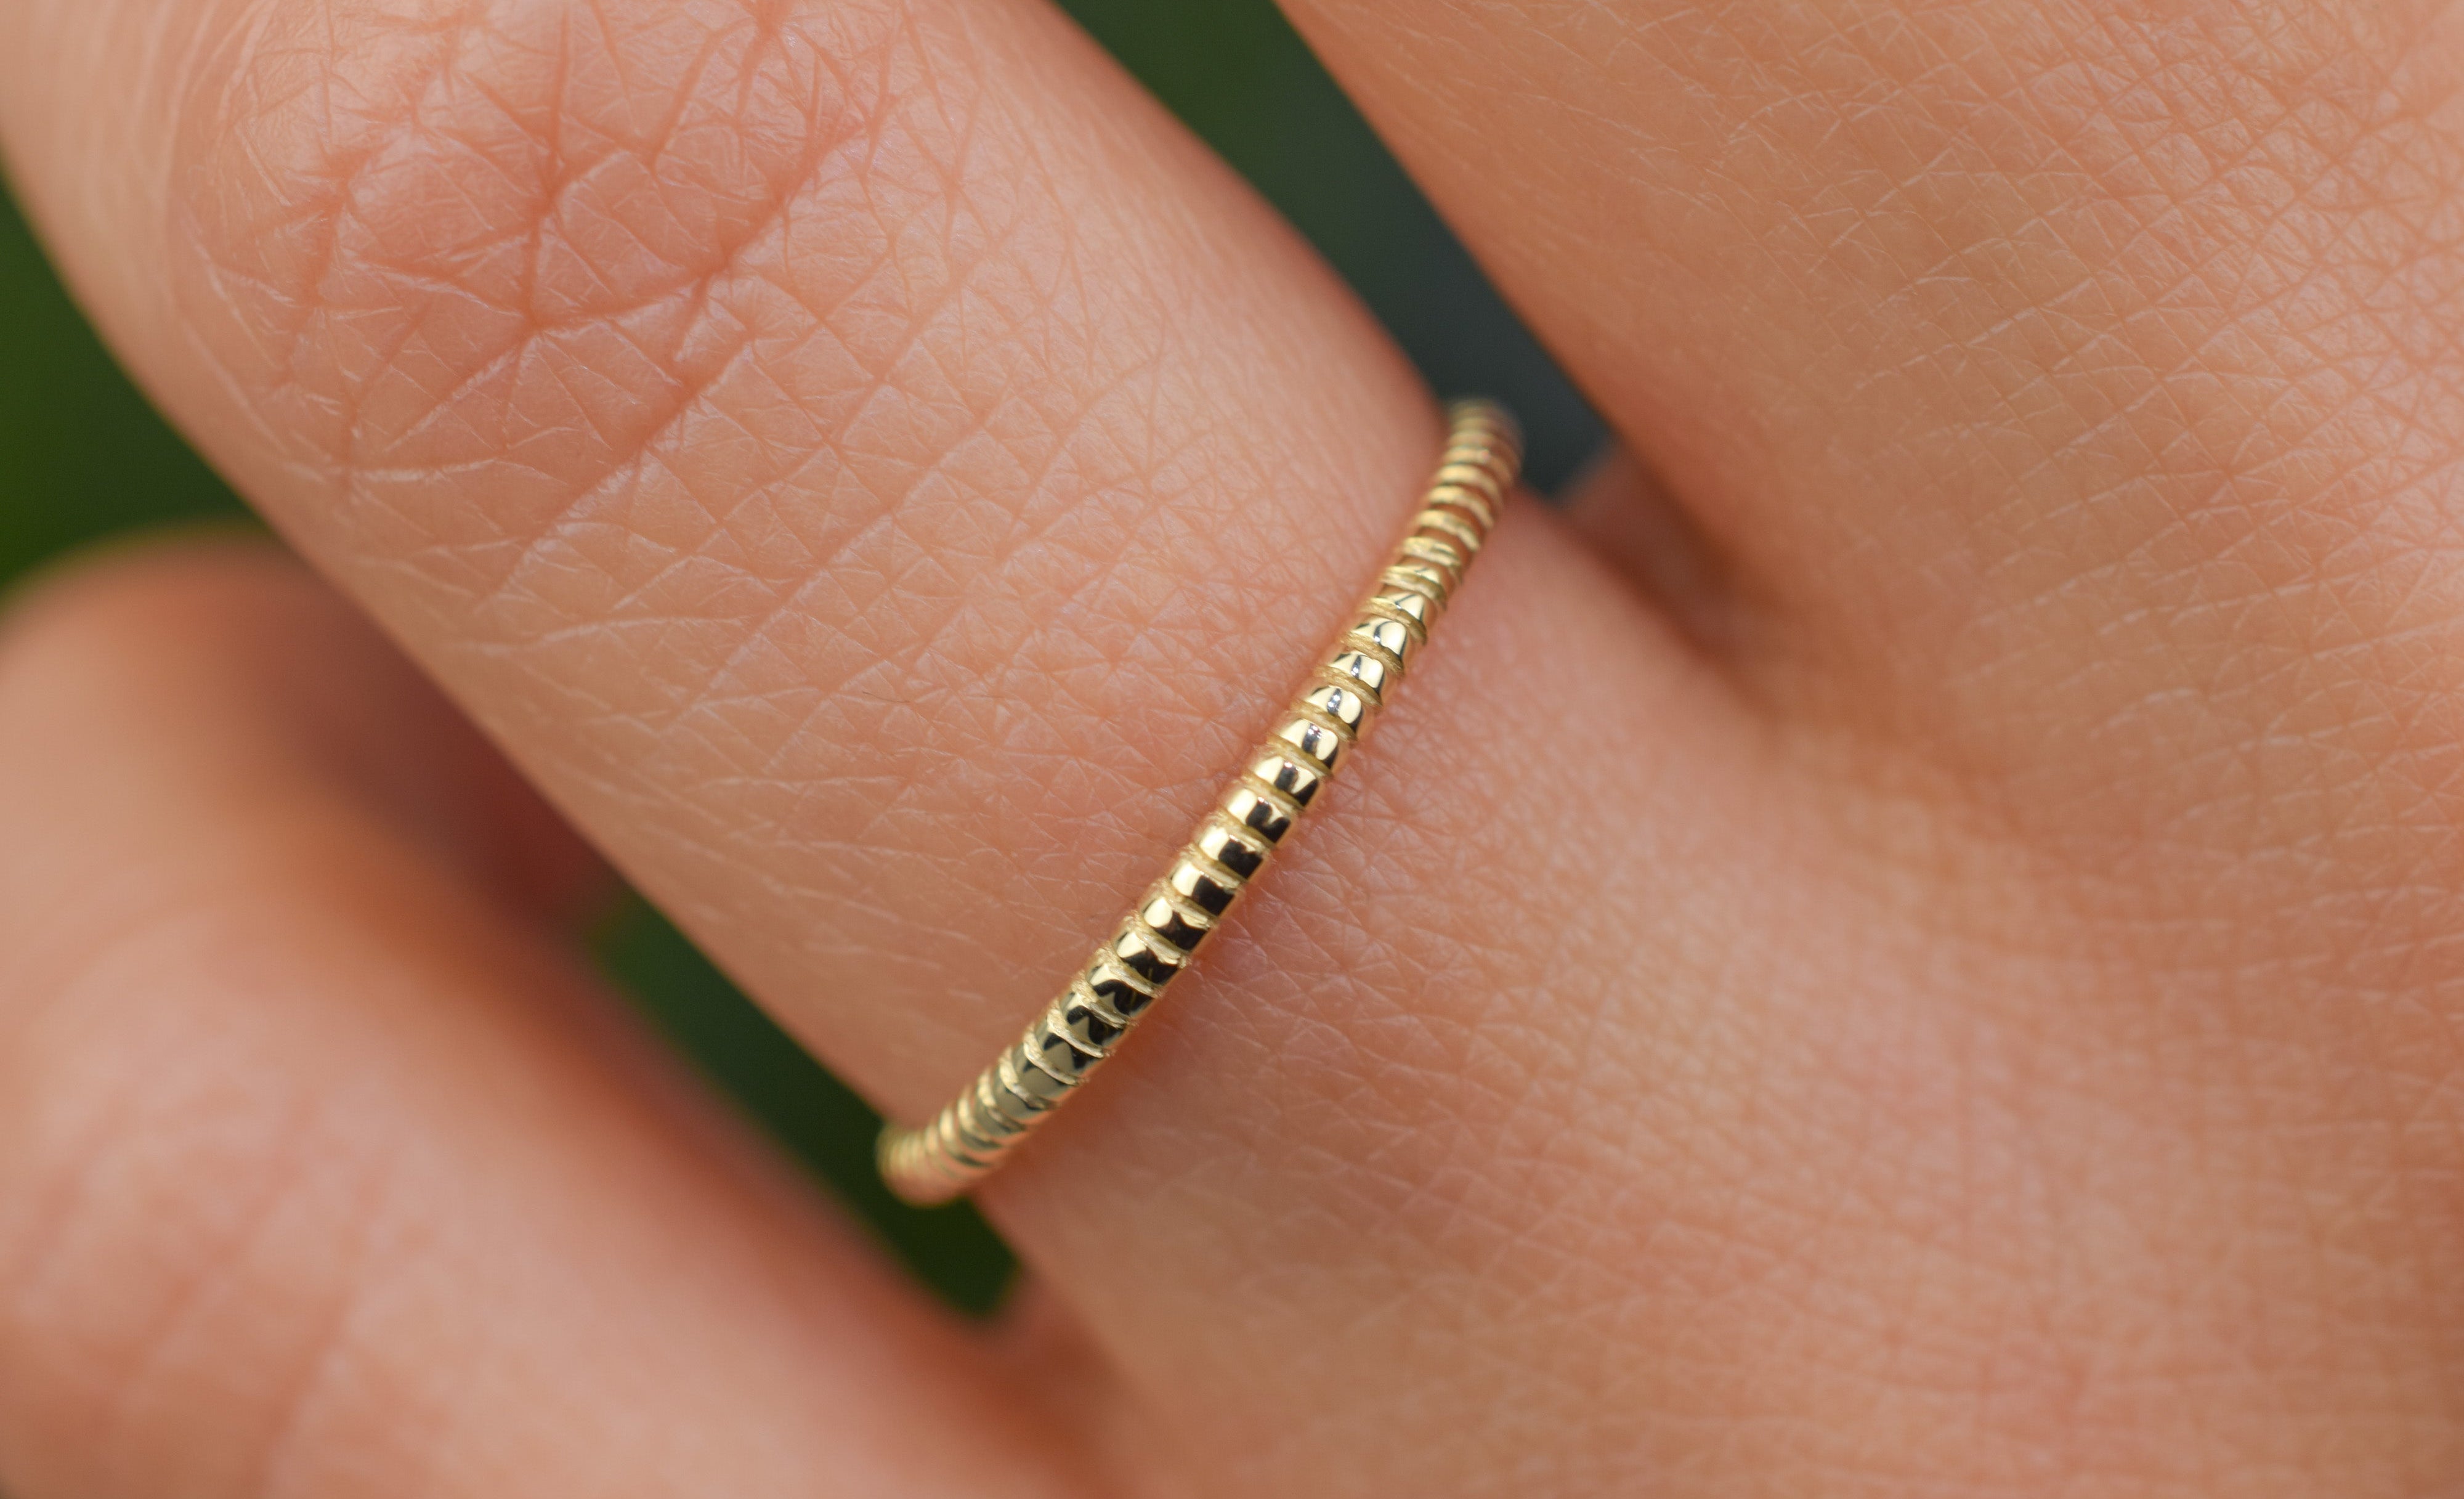 Aanschuifring, ronde ring, 14k gouden ring, subtiele ring, 14k ring, 585 gouden ring, ribbel ring, stacking ring, gouden ribbel ring